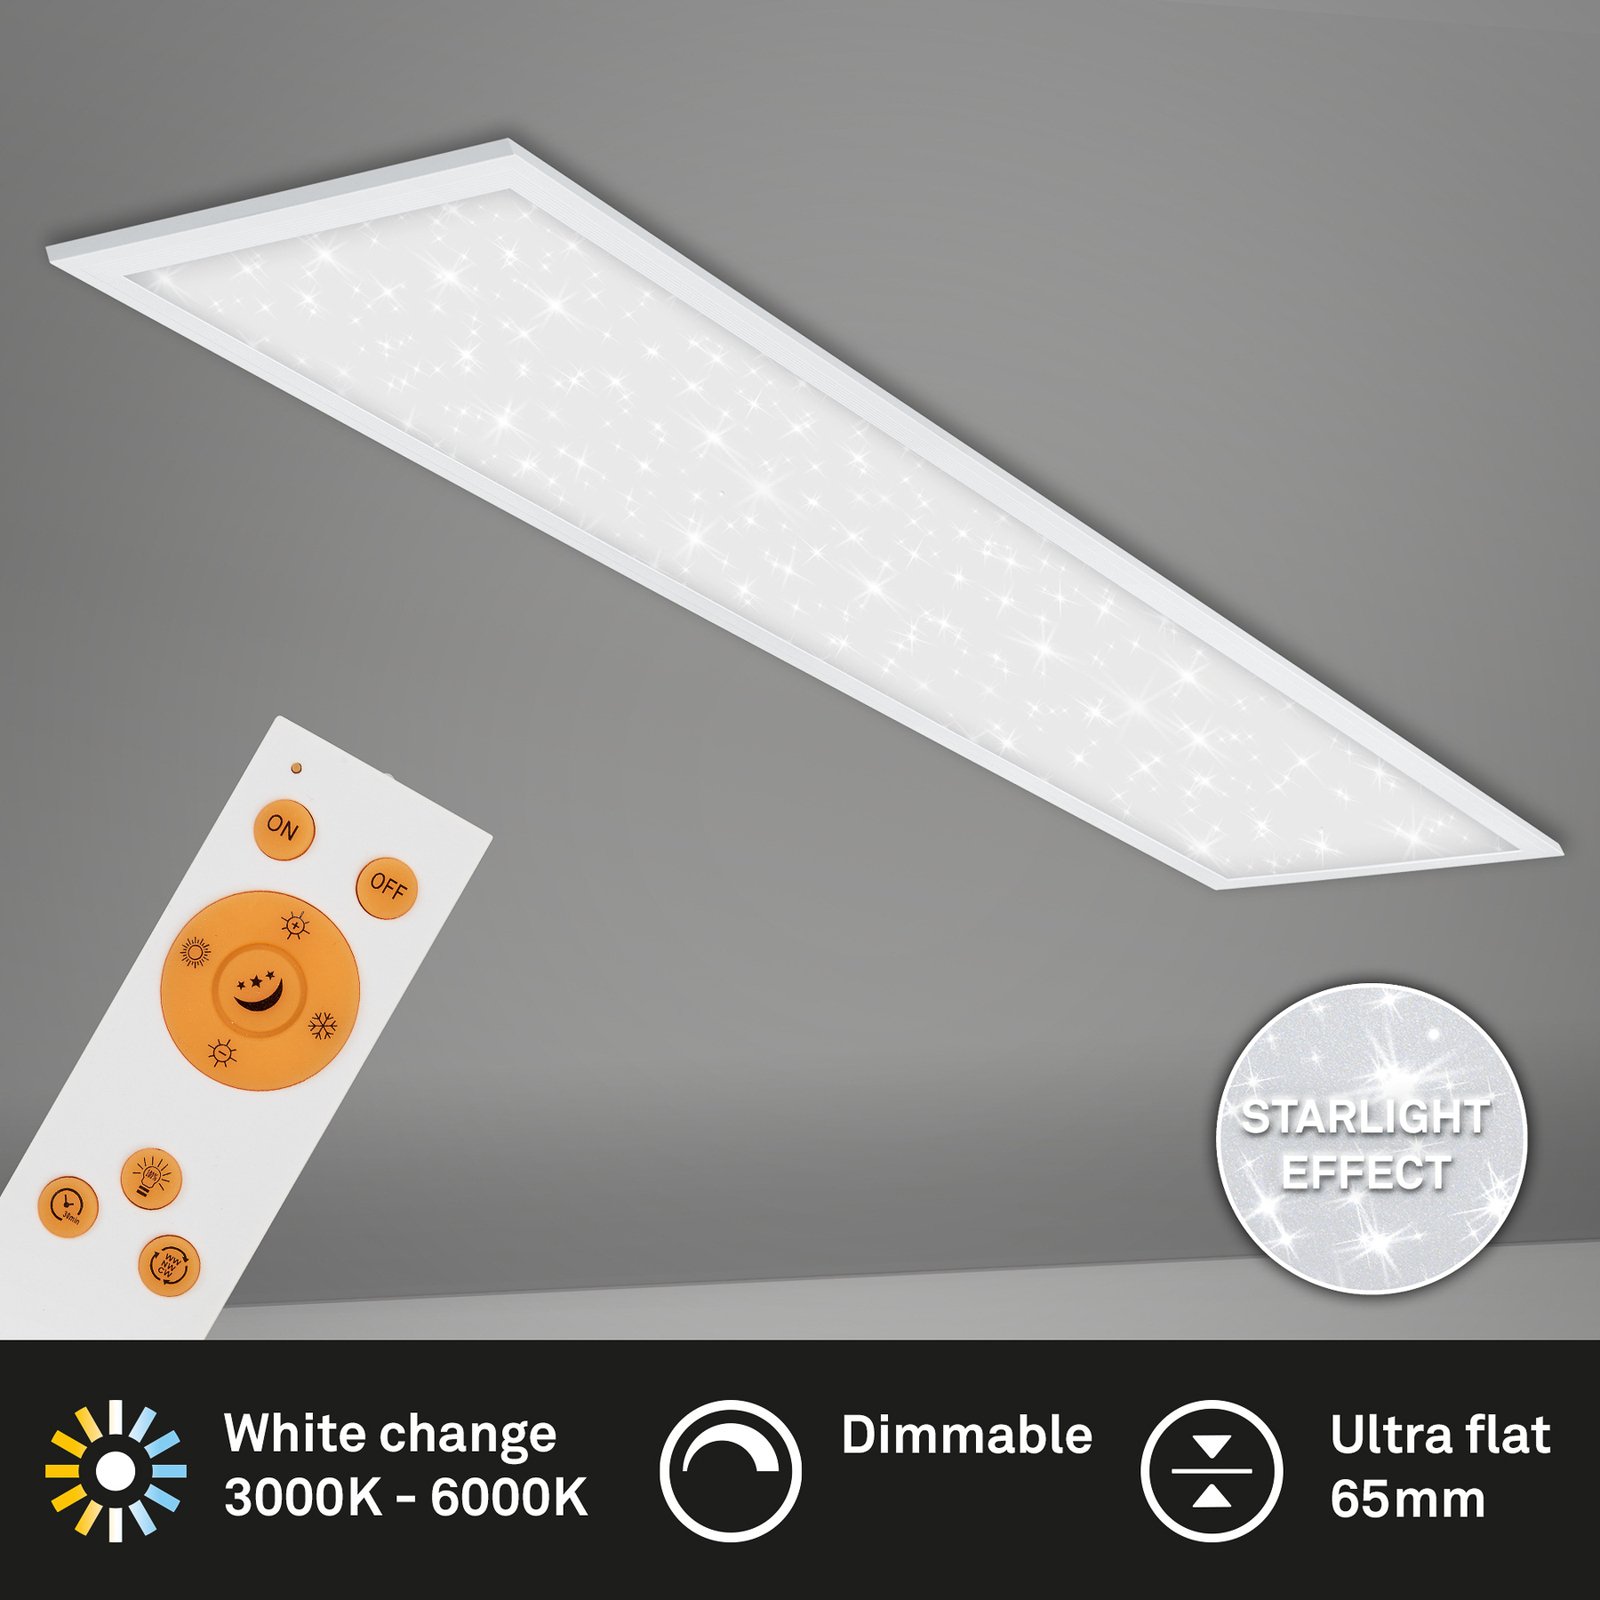 LED panel Pallas fehér dimmelhető CCT 119.5x29.5cm